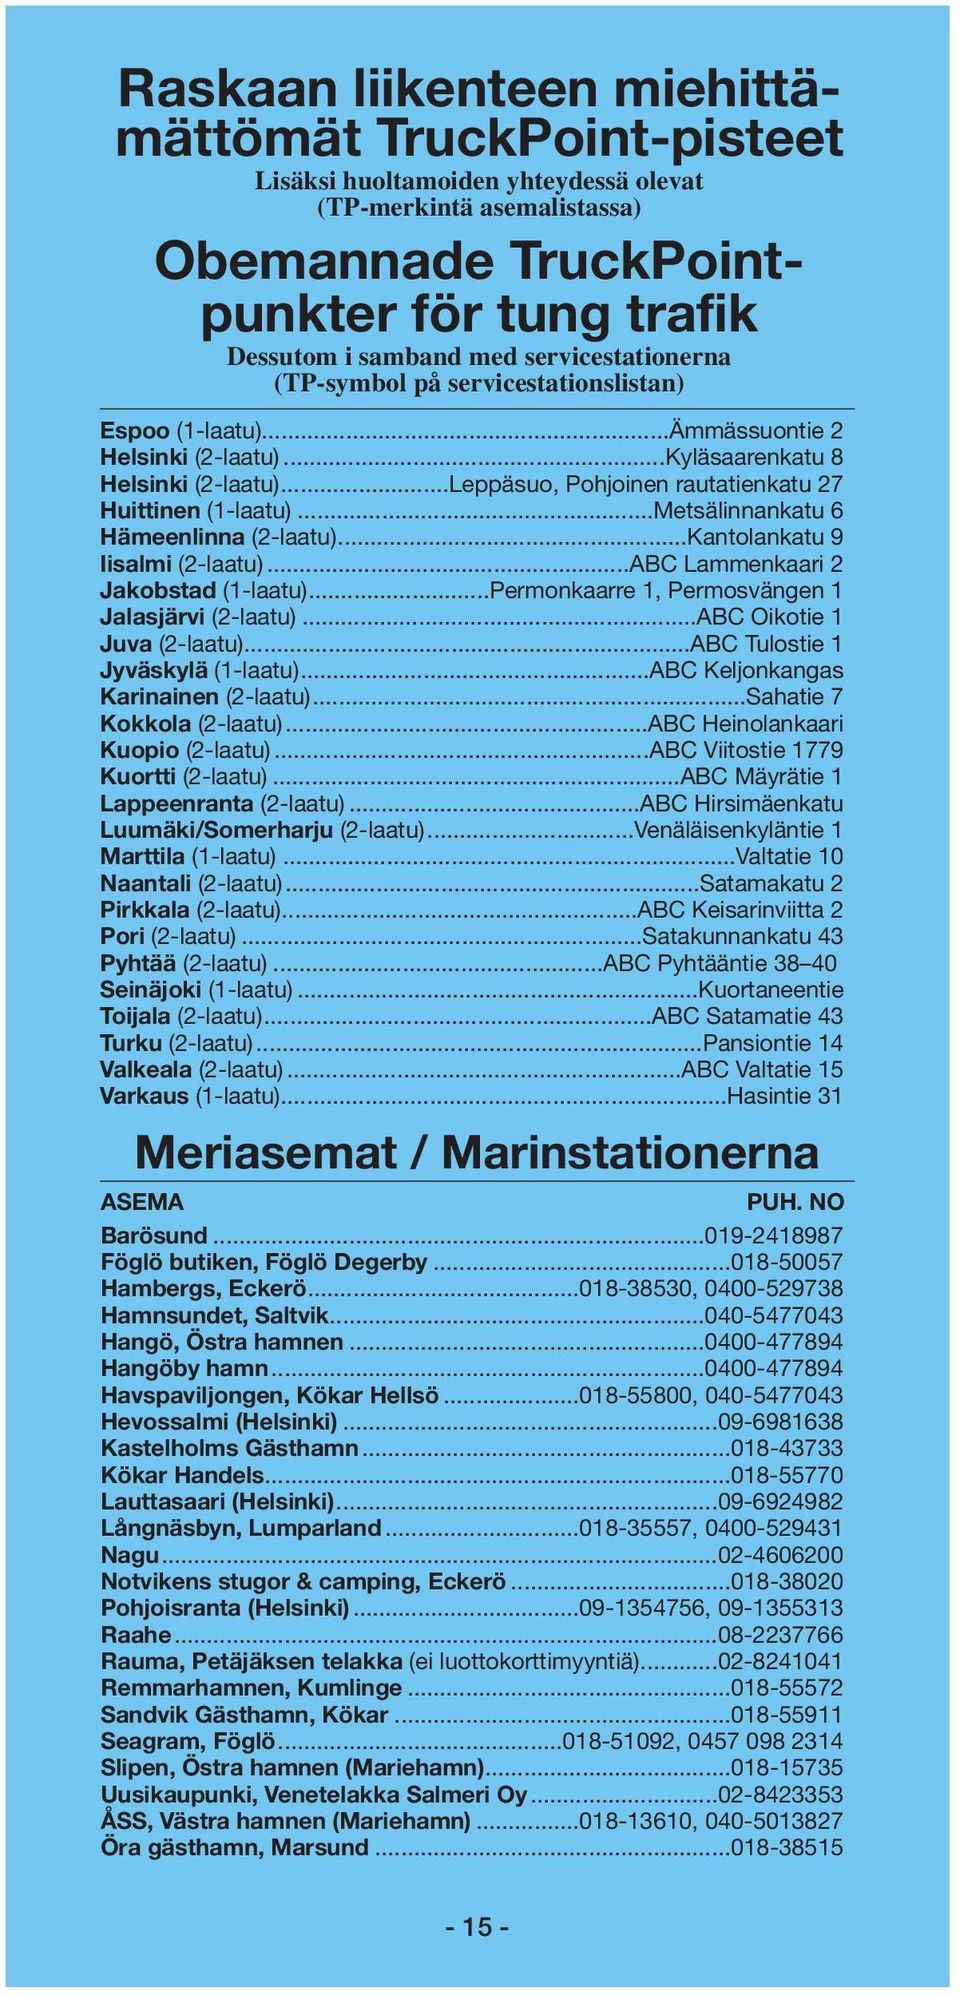 ..Leppäsuo, Pohjoinen rautatienkatu 27 Huittinen (1-laatu)...Metsälinnankatu 6 Hämeenlinna (2-laatu)...Kantolankatu 9 Iisalmi (2-laatu)...ABC Lammenkaari 2 Jakobstad (1-laatu).